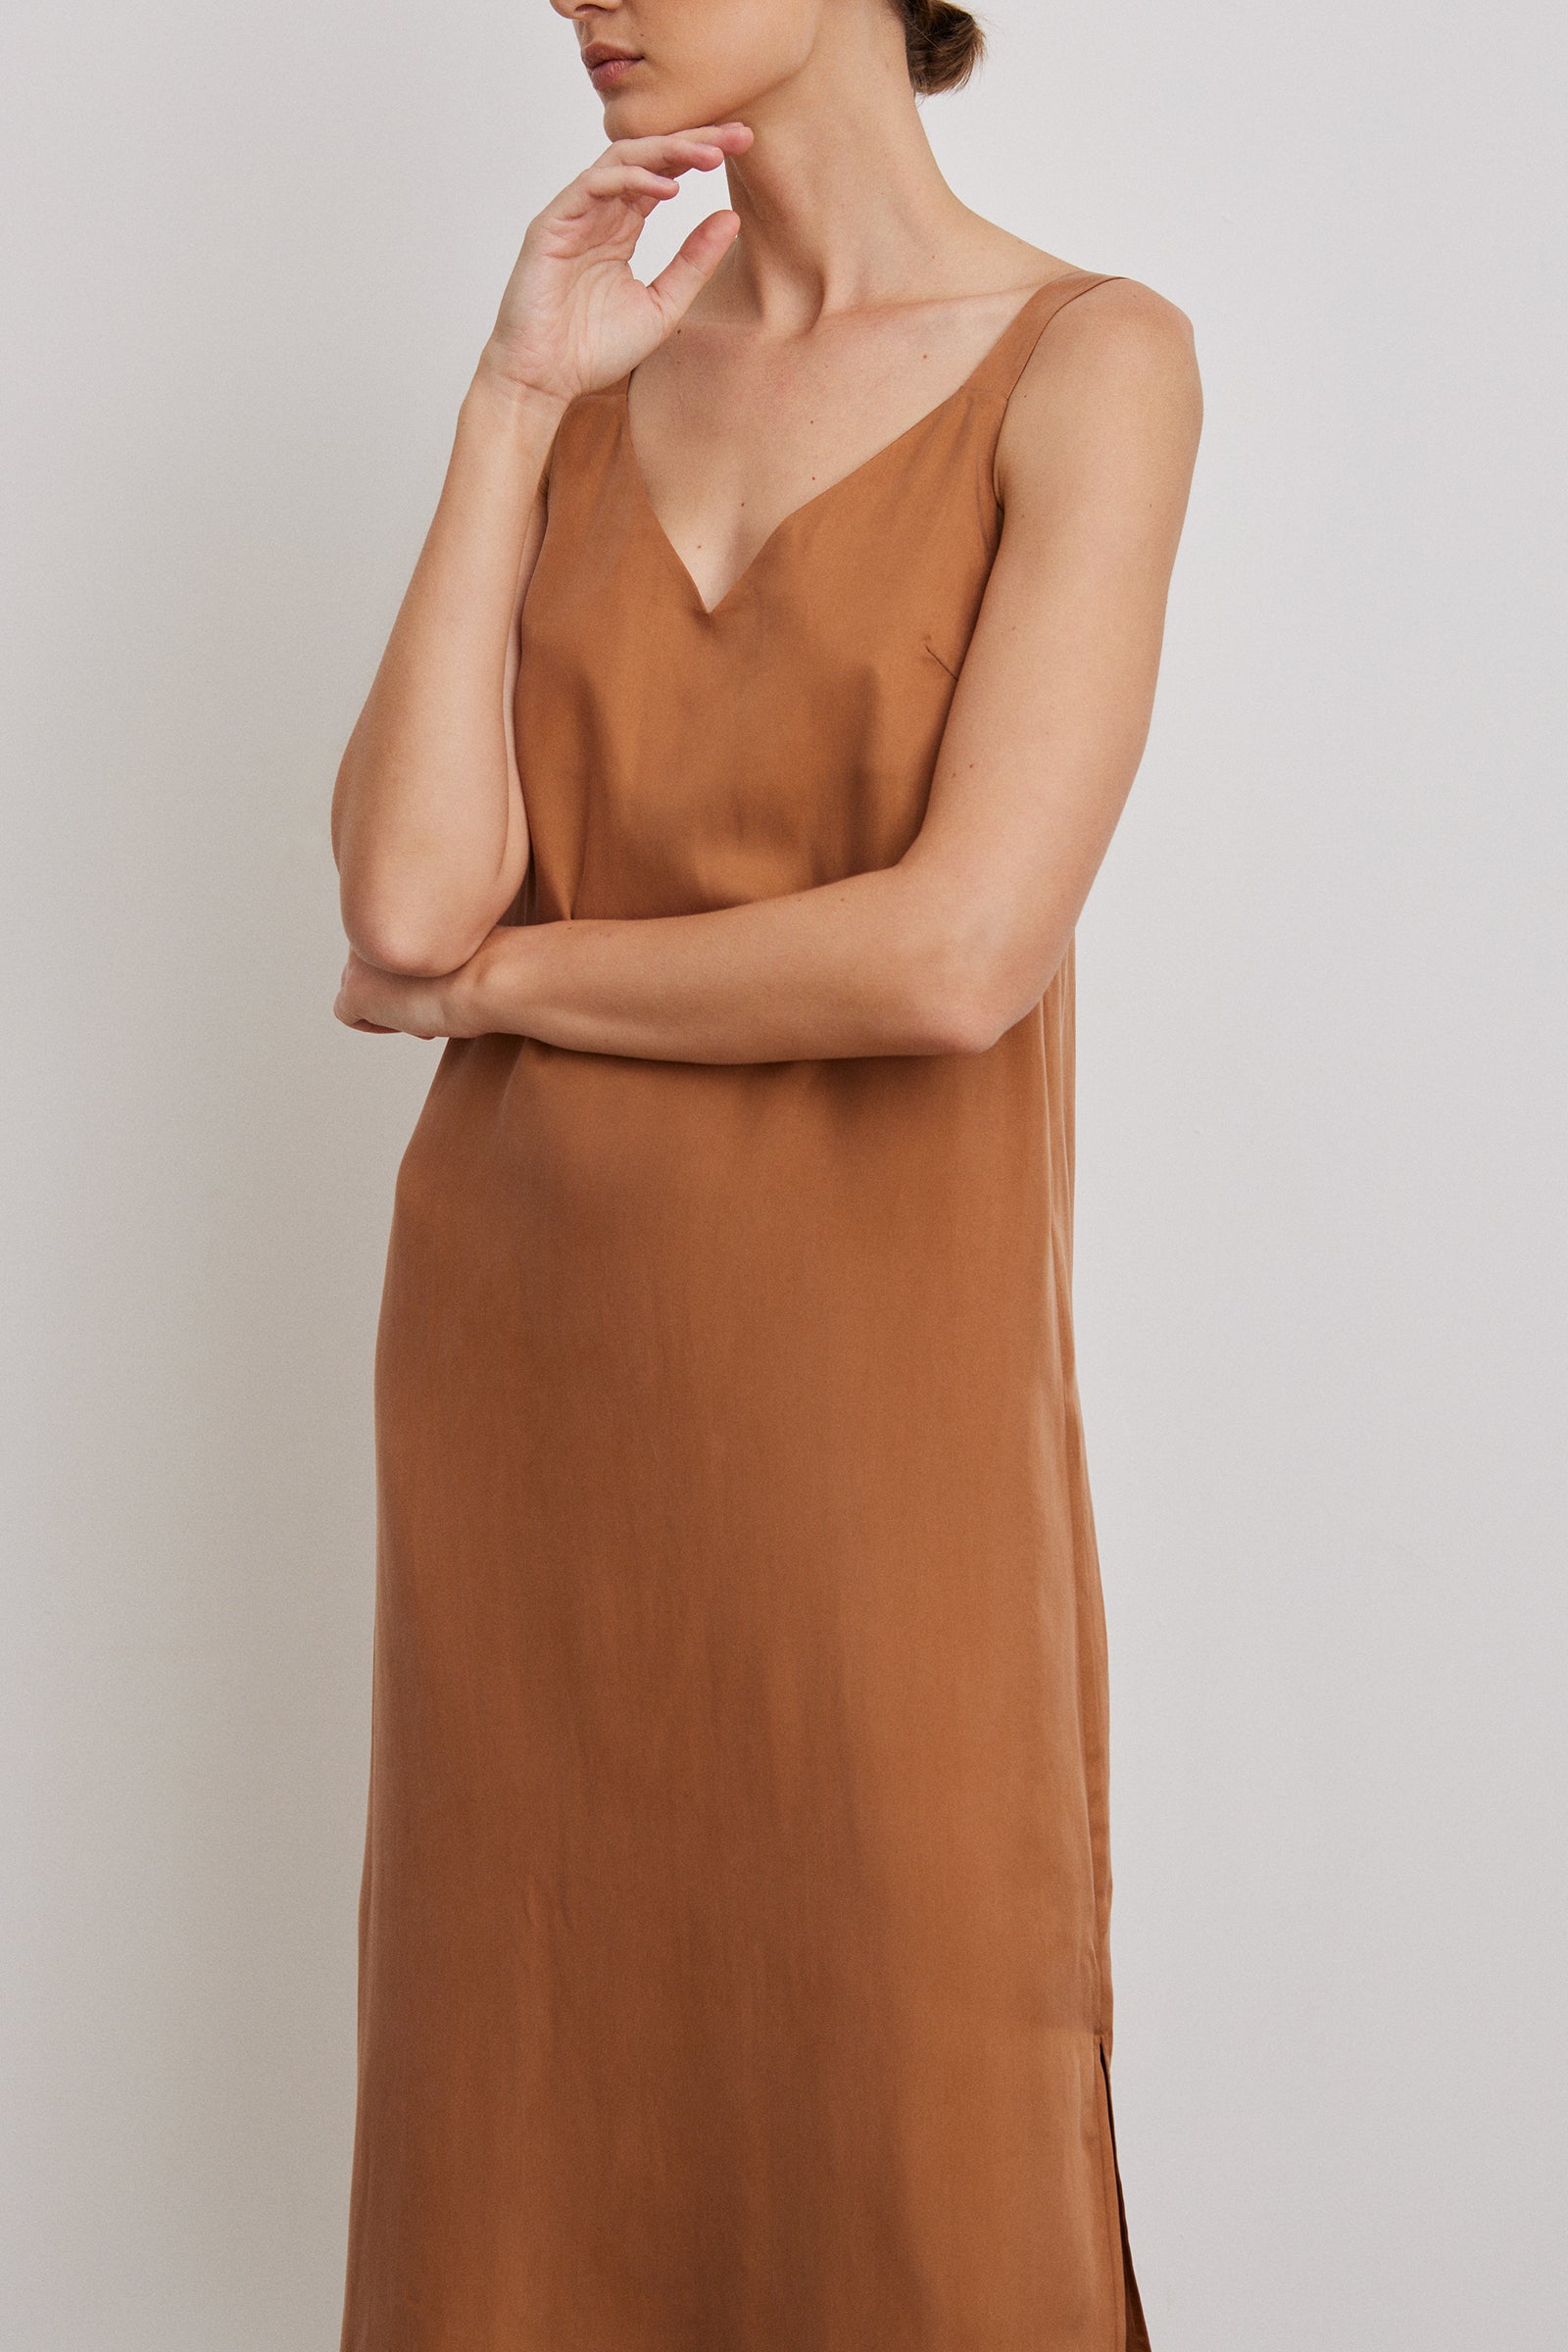 Nancy Ganz Body Architect Beige Ultra Firm Slip Dress With Bra L54227 Size  36D